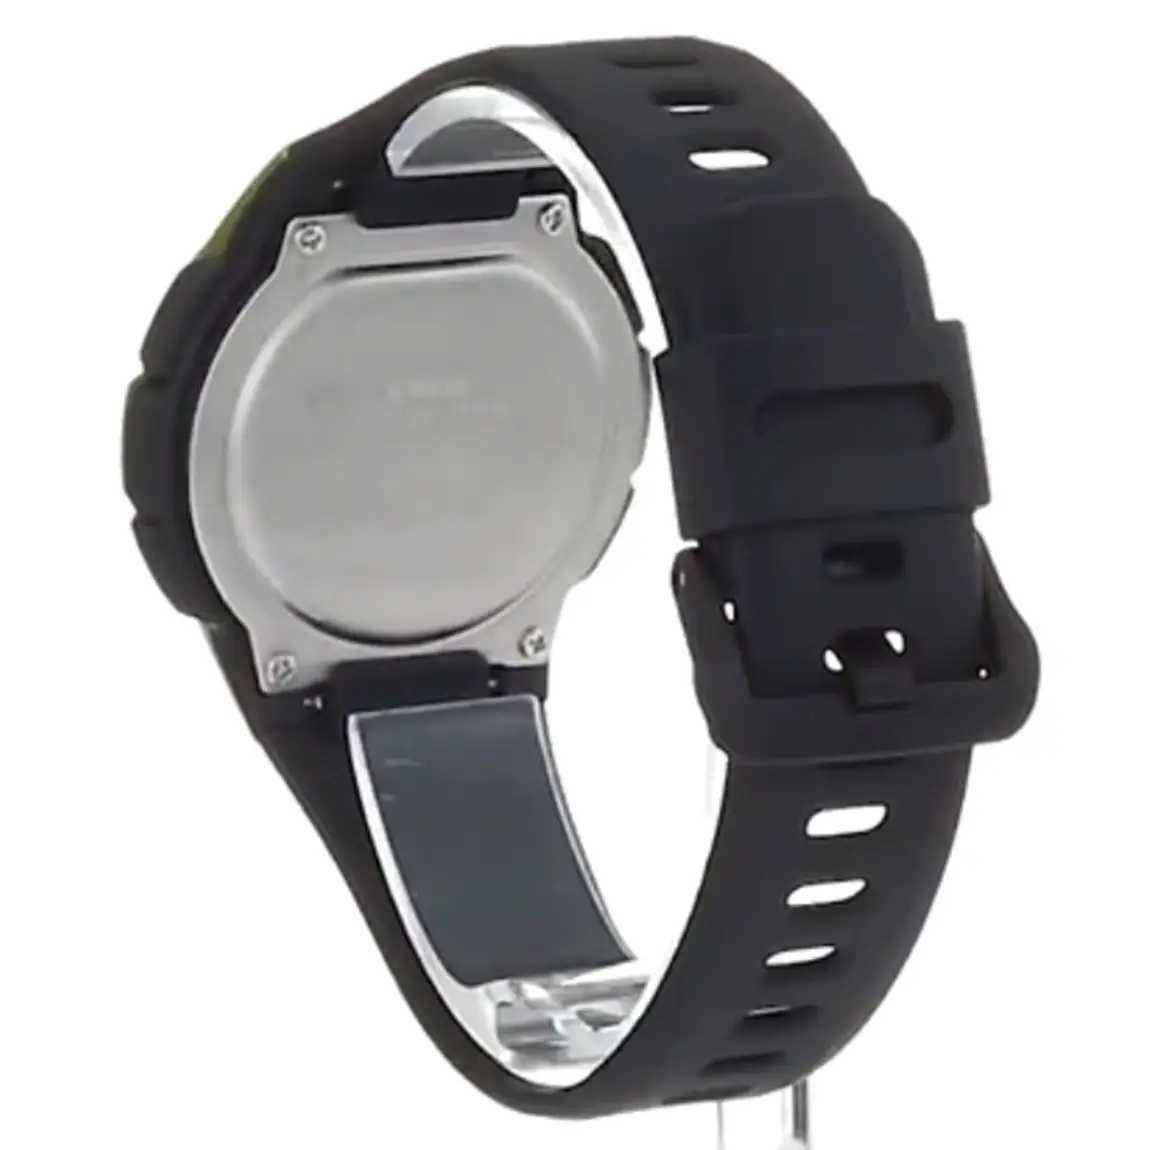 Casio Men’s Classic Digital Quartz 100m Black Resin Watch